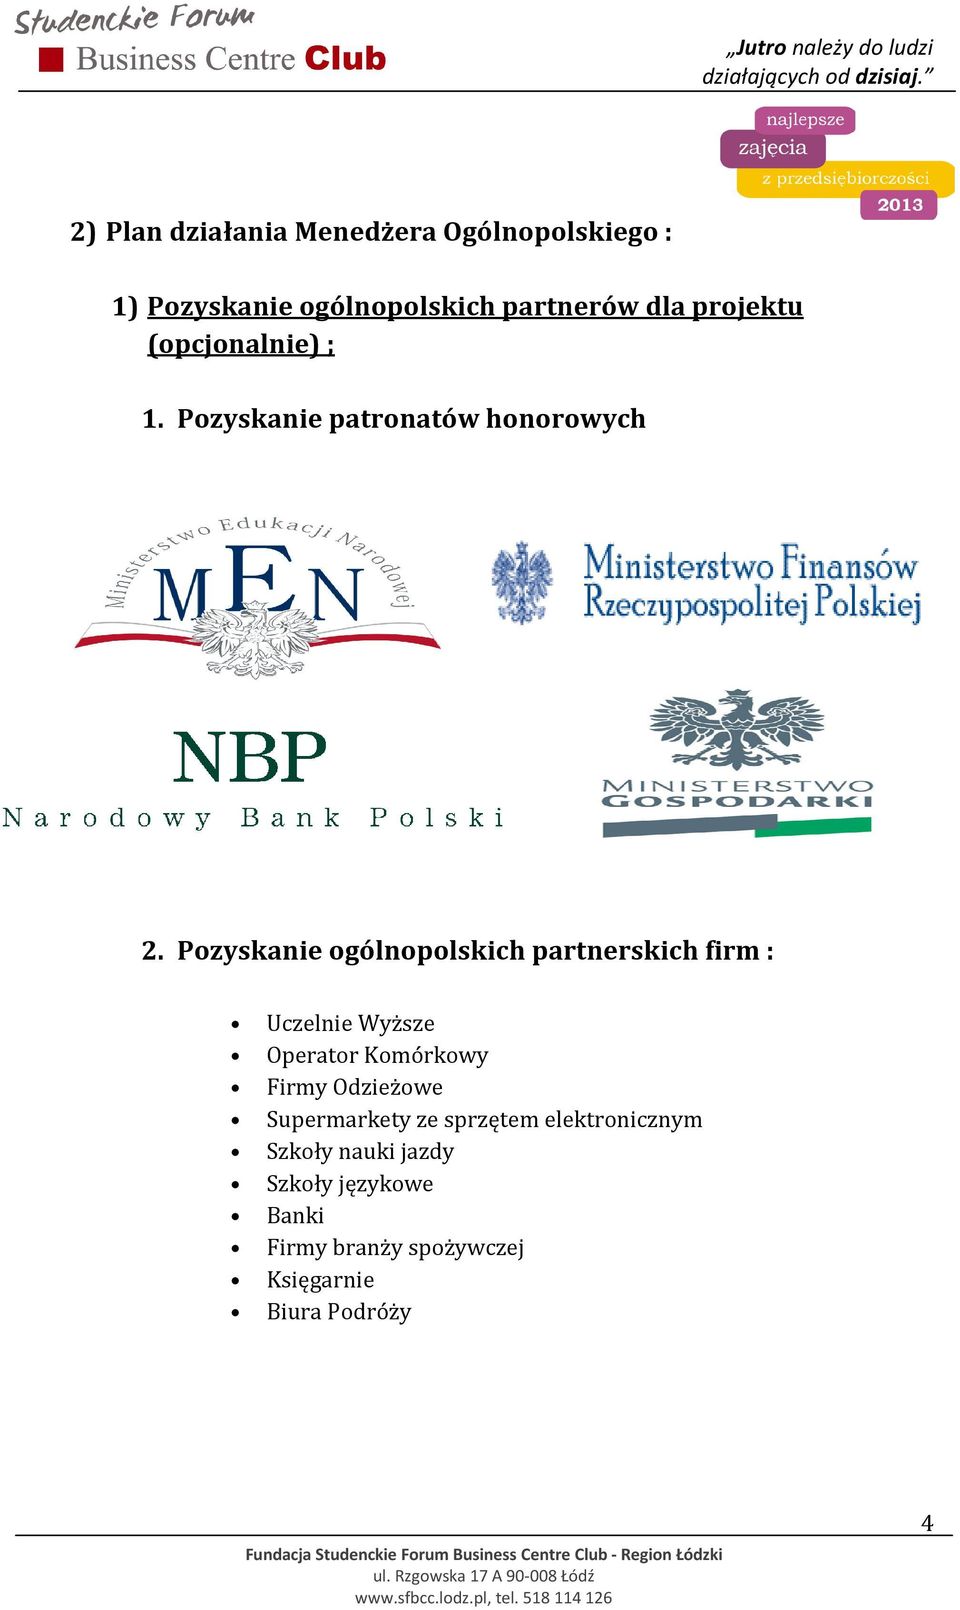 Pozyskanie ogólnopolskich partnerskich firm : Uczelnie Wyższe Operator Komórkowy Firmy